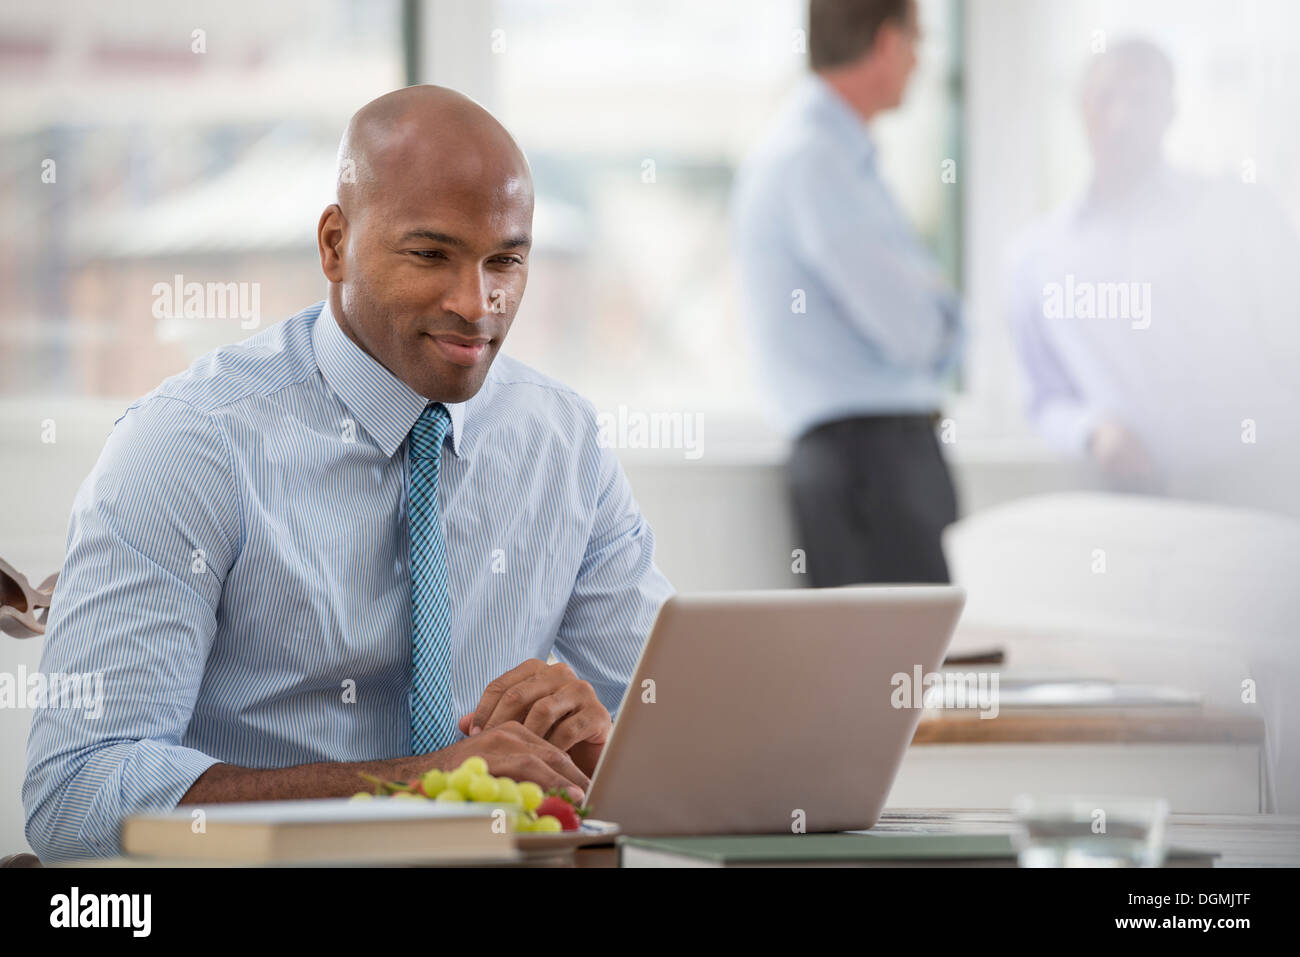 La vie de bureau. Un homme dans une chemise et cravate assis à un bureau, à l'aide d'un ordinateur portable. Banque D'Images